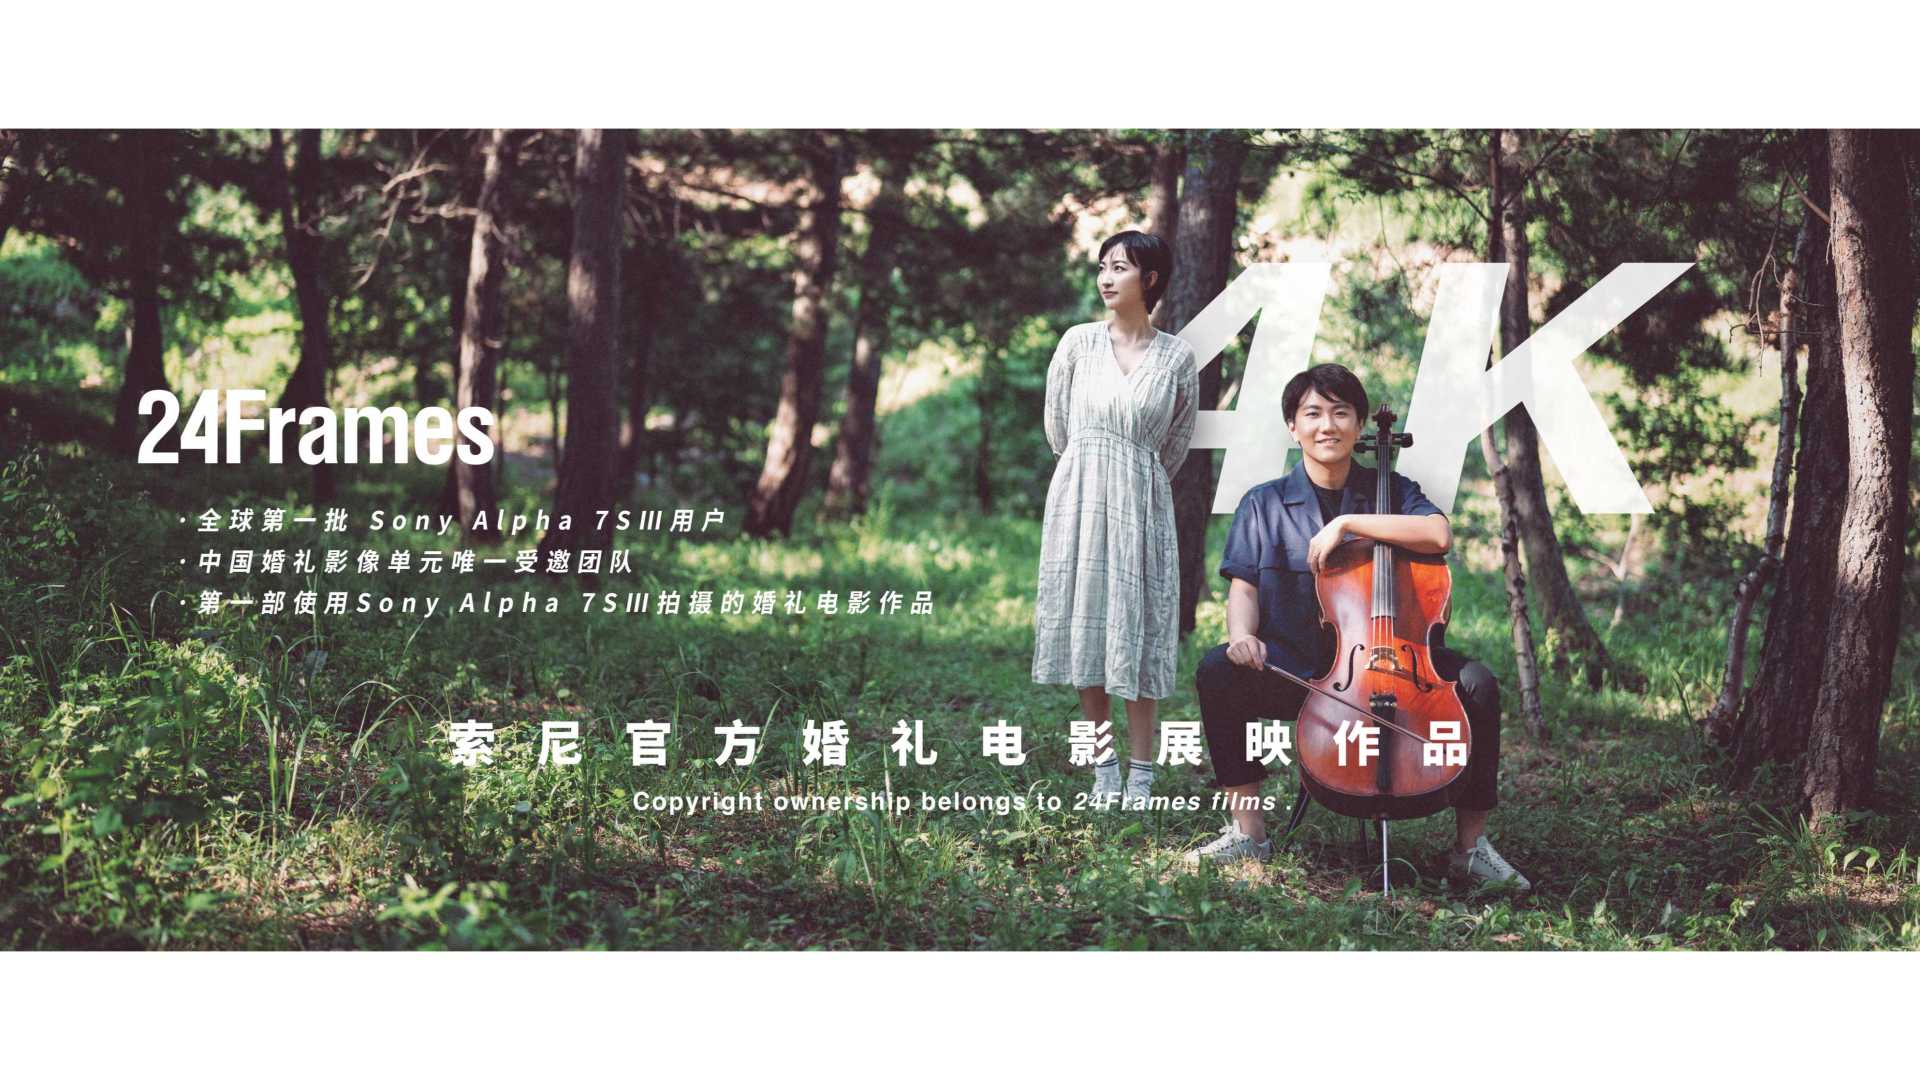 【24Frames】SONY A7S3 索尼官方婚礼电影展映作品「导演剪辑版」